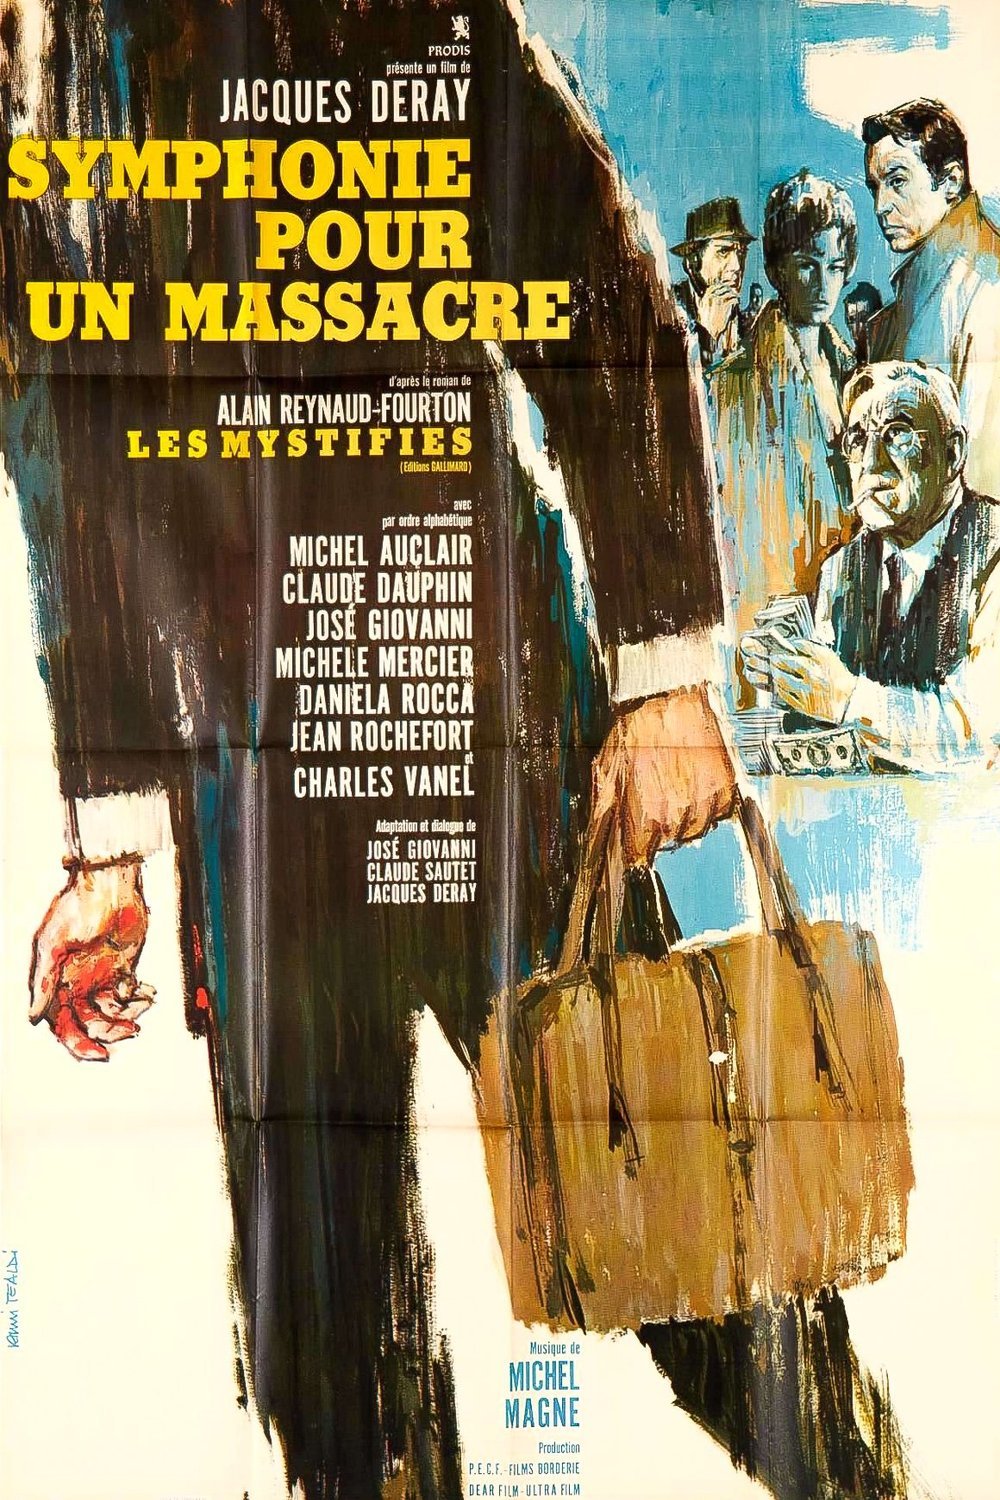 Poster of the movie Symphonie pour un massacre